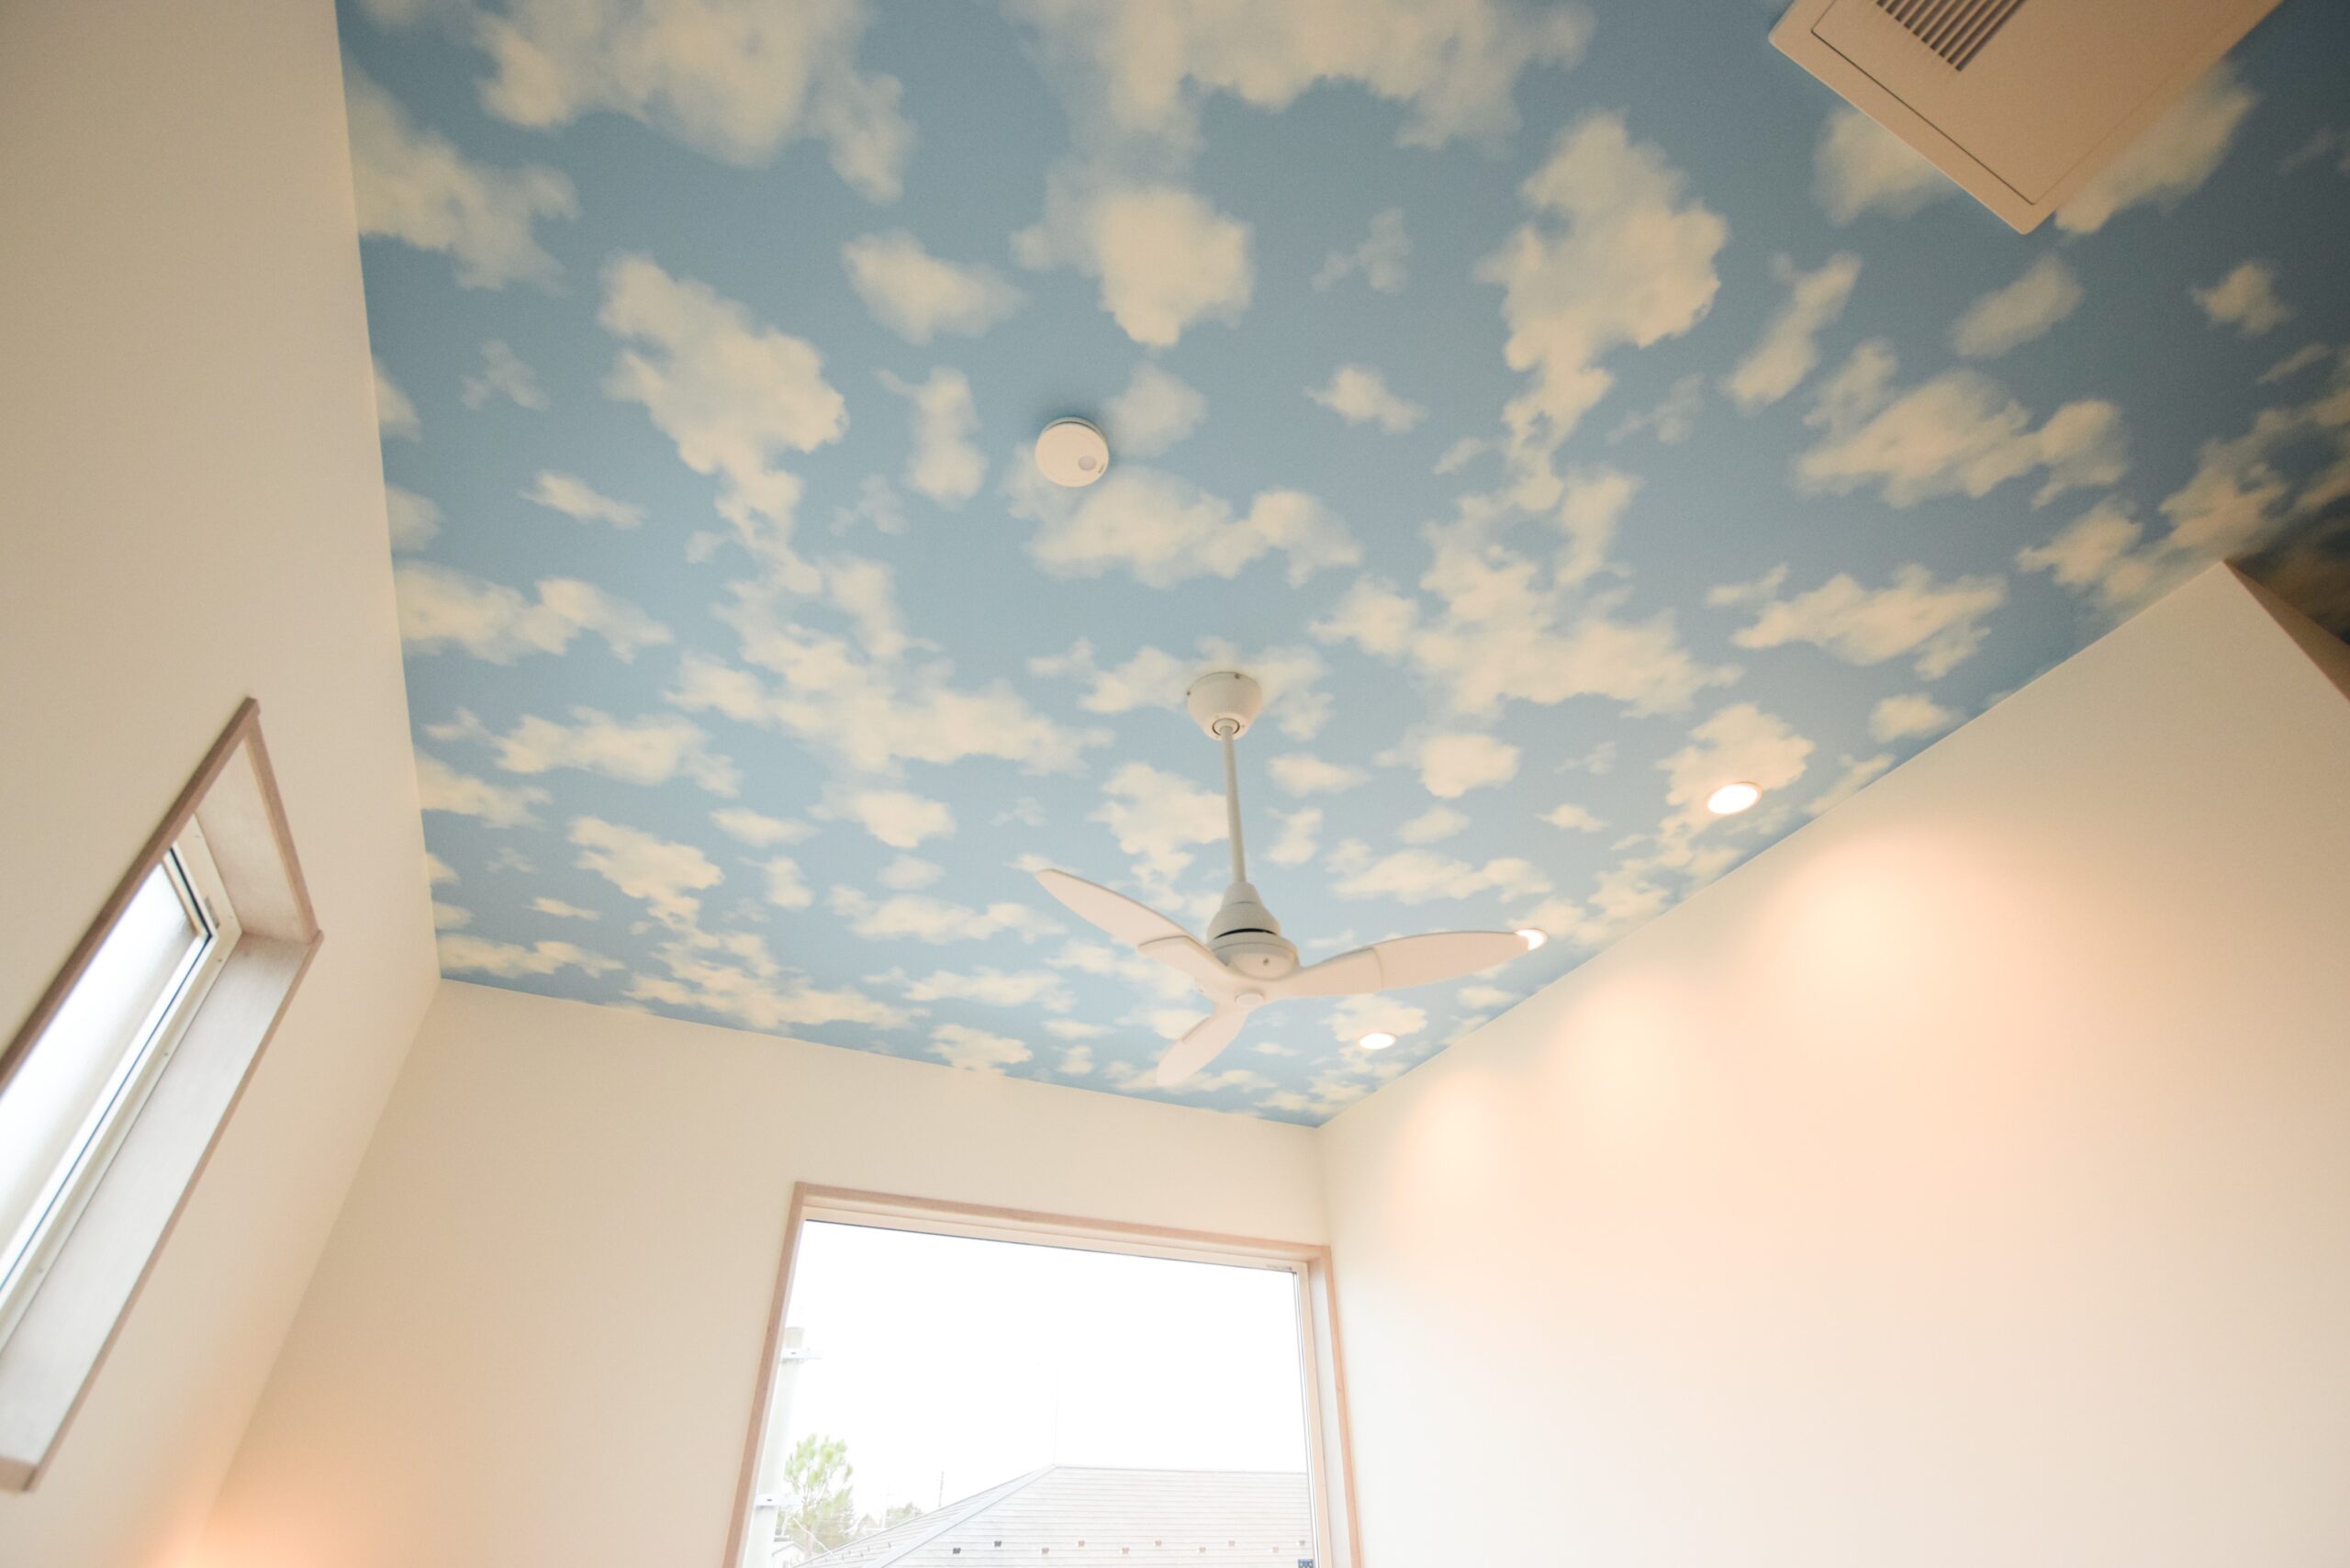 天井を見上げるといつでも青空が広がっているので元気で明るい空間に<br/>
RE53453